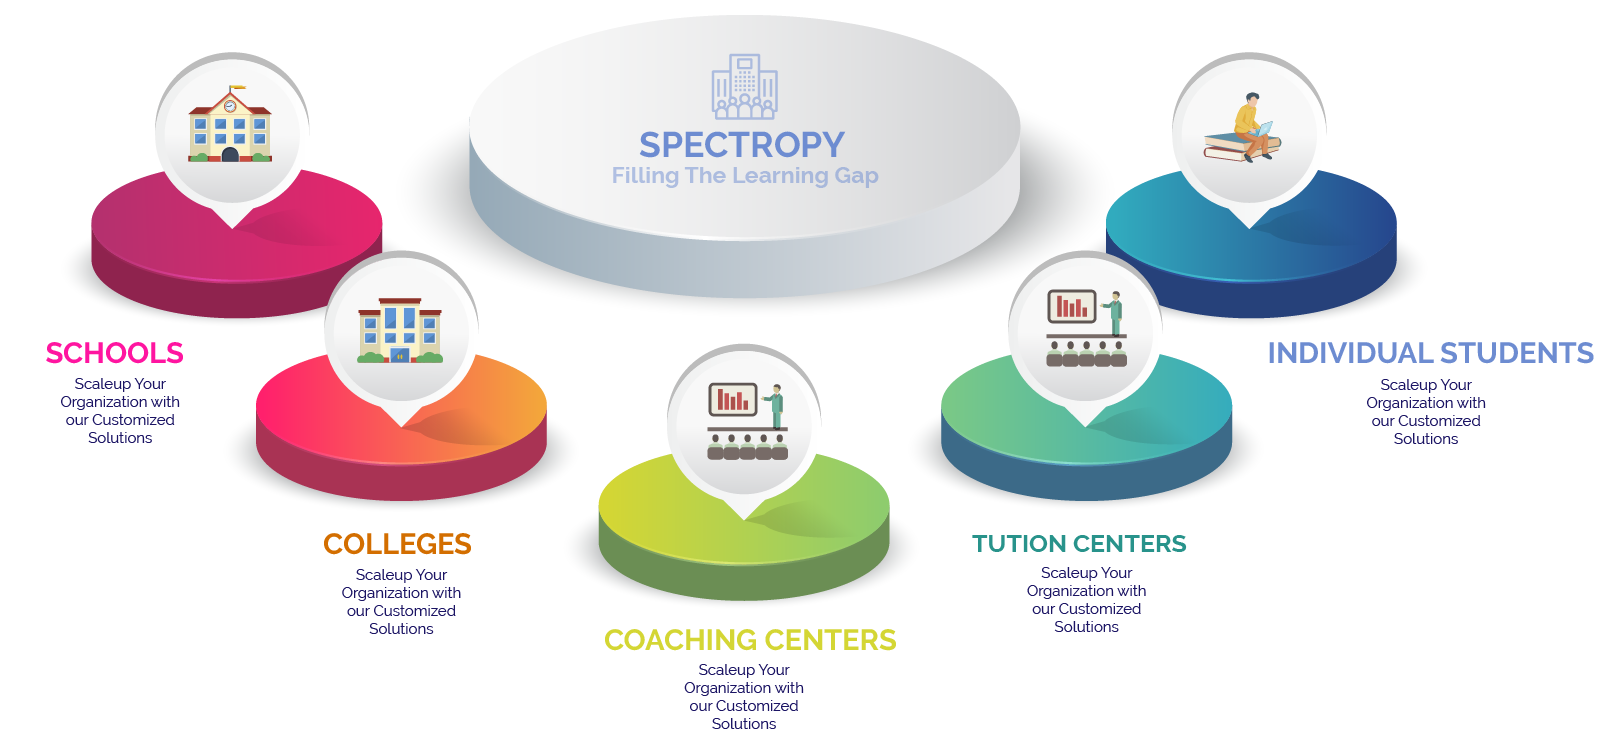 Spectropy Services